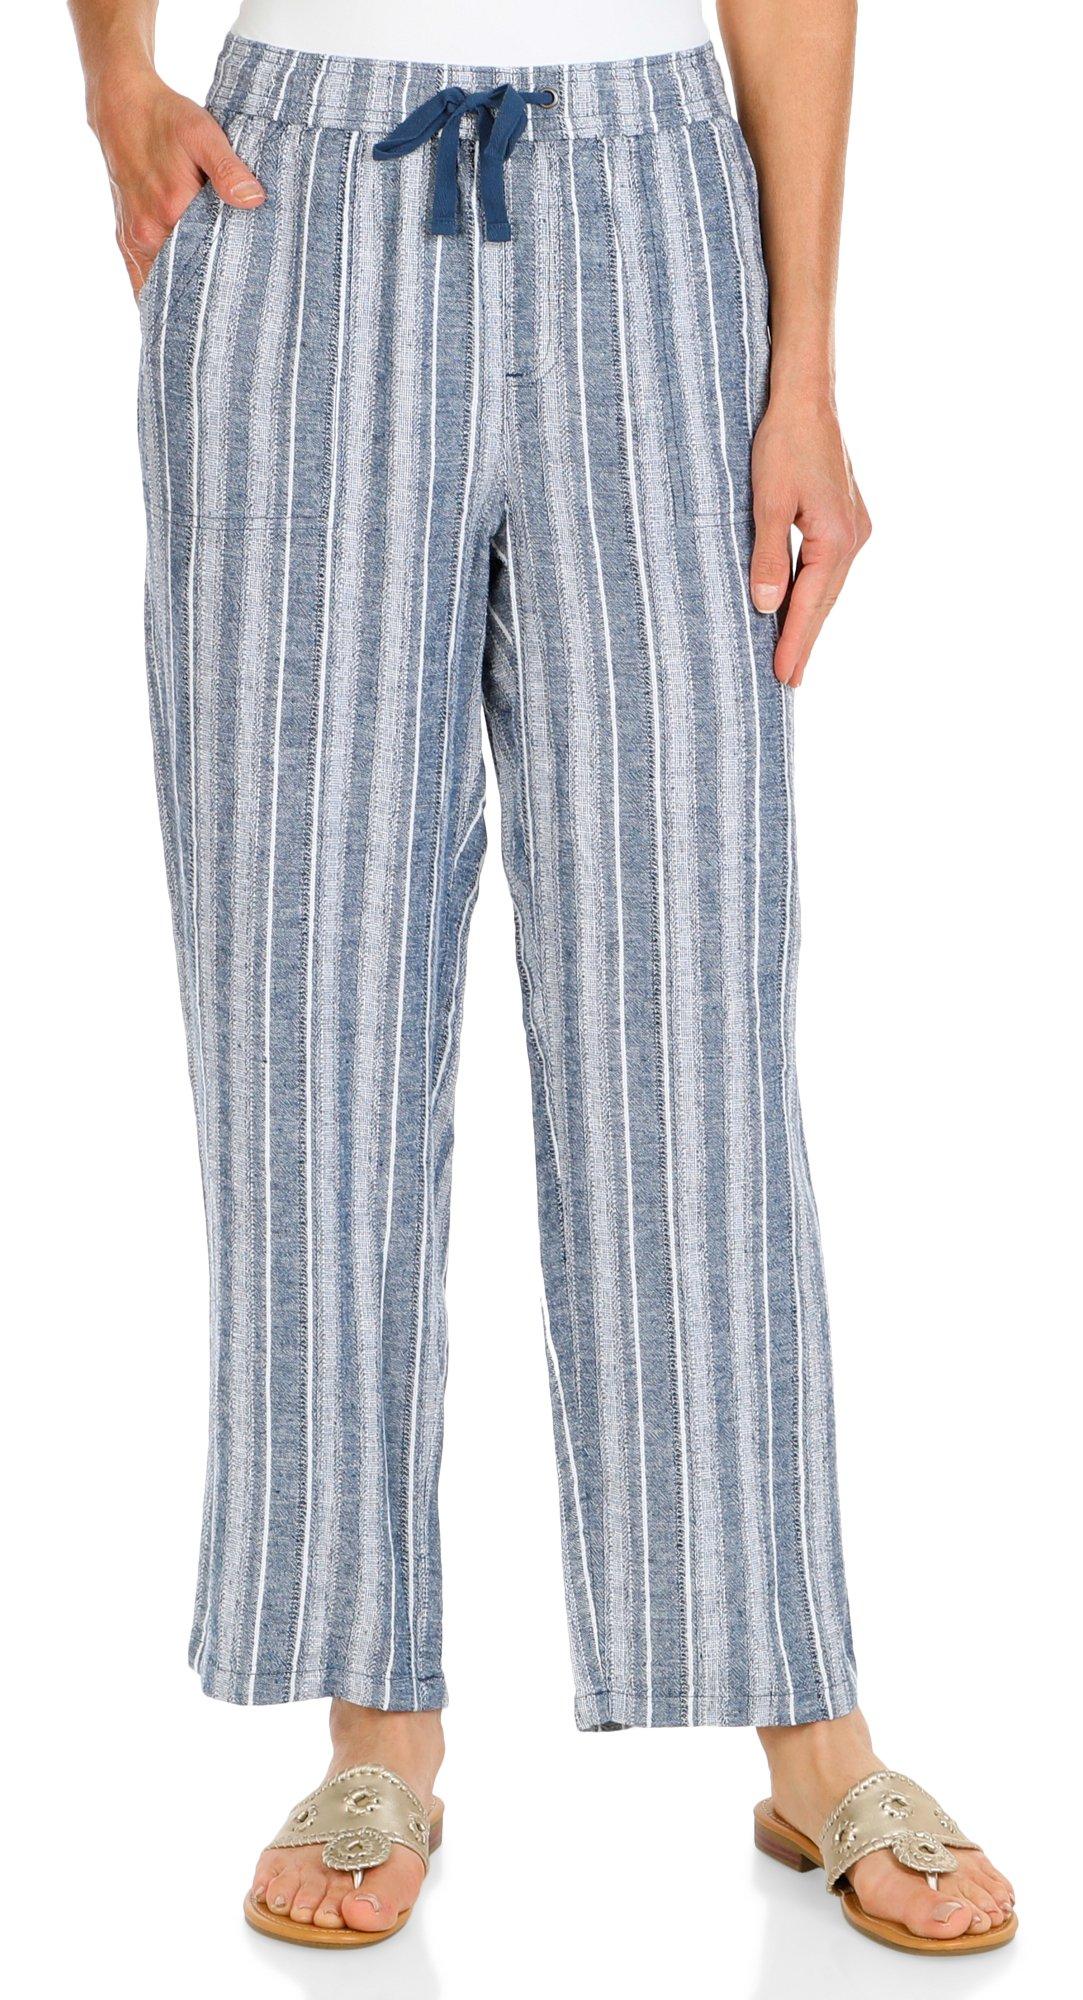 Women's Striped Drawcord Linen Pants